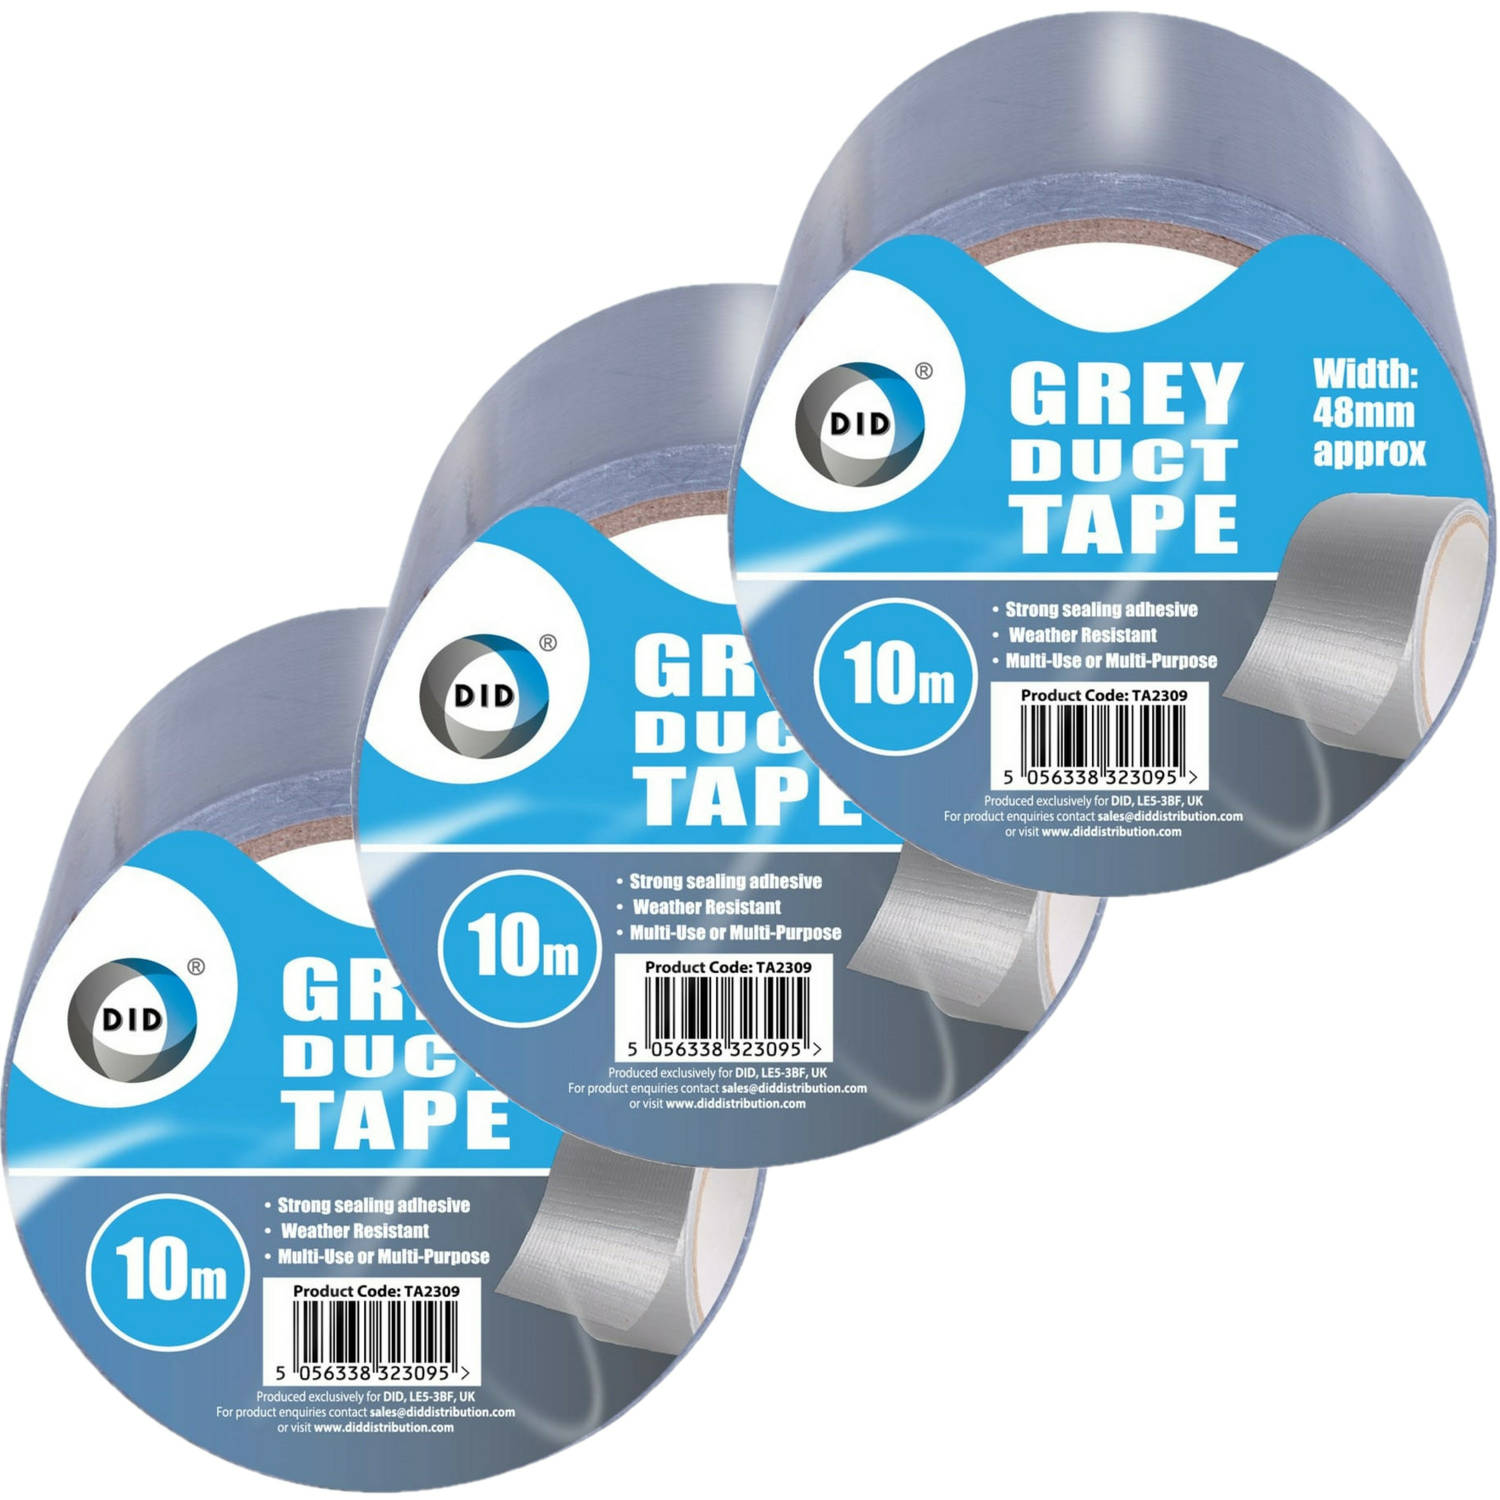 Did Duct Tape/reparatietape 3 Stuks 10 Meter - Tape (Klussen) - Grijs